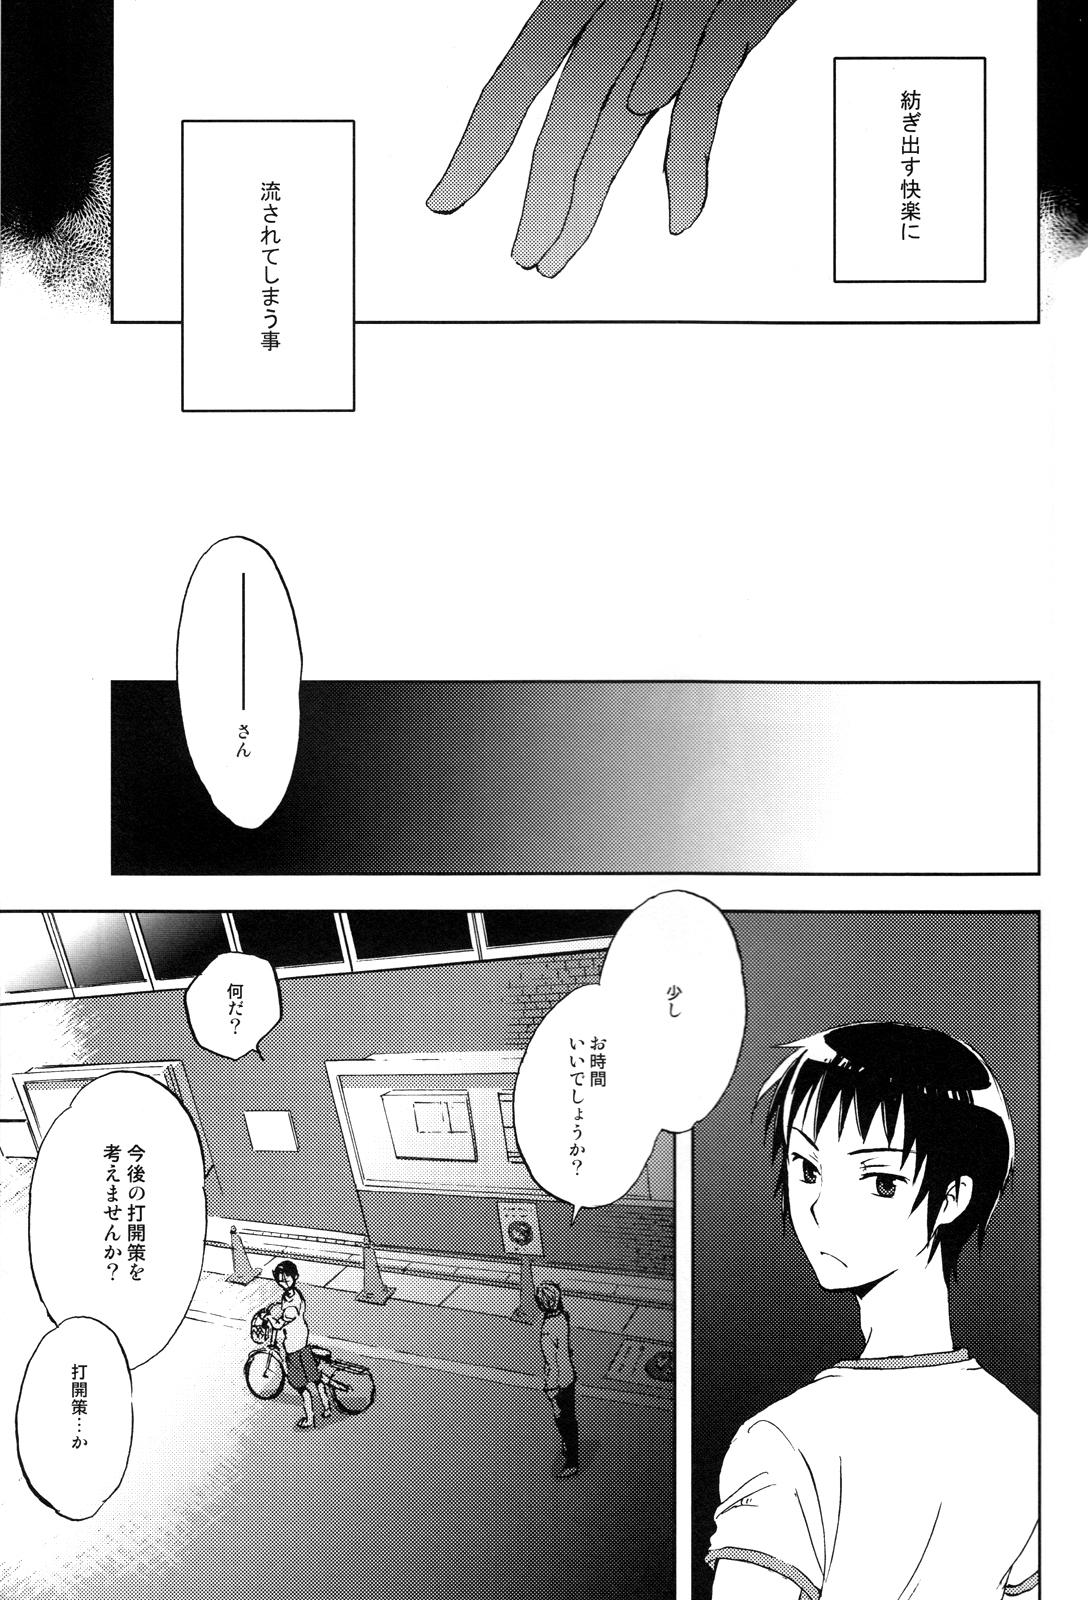 Flash Manatsu no meiro - The melancholy of haruhi suzumiya Olderwoman - Page 4